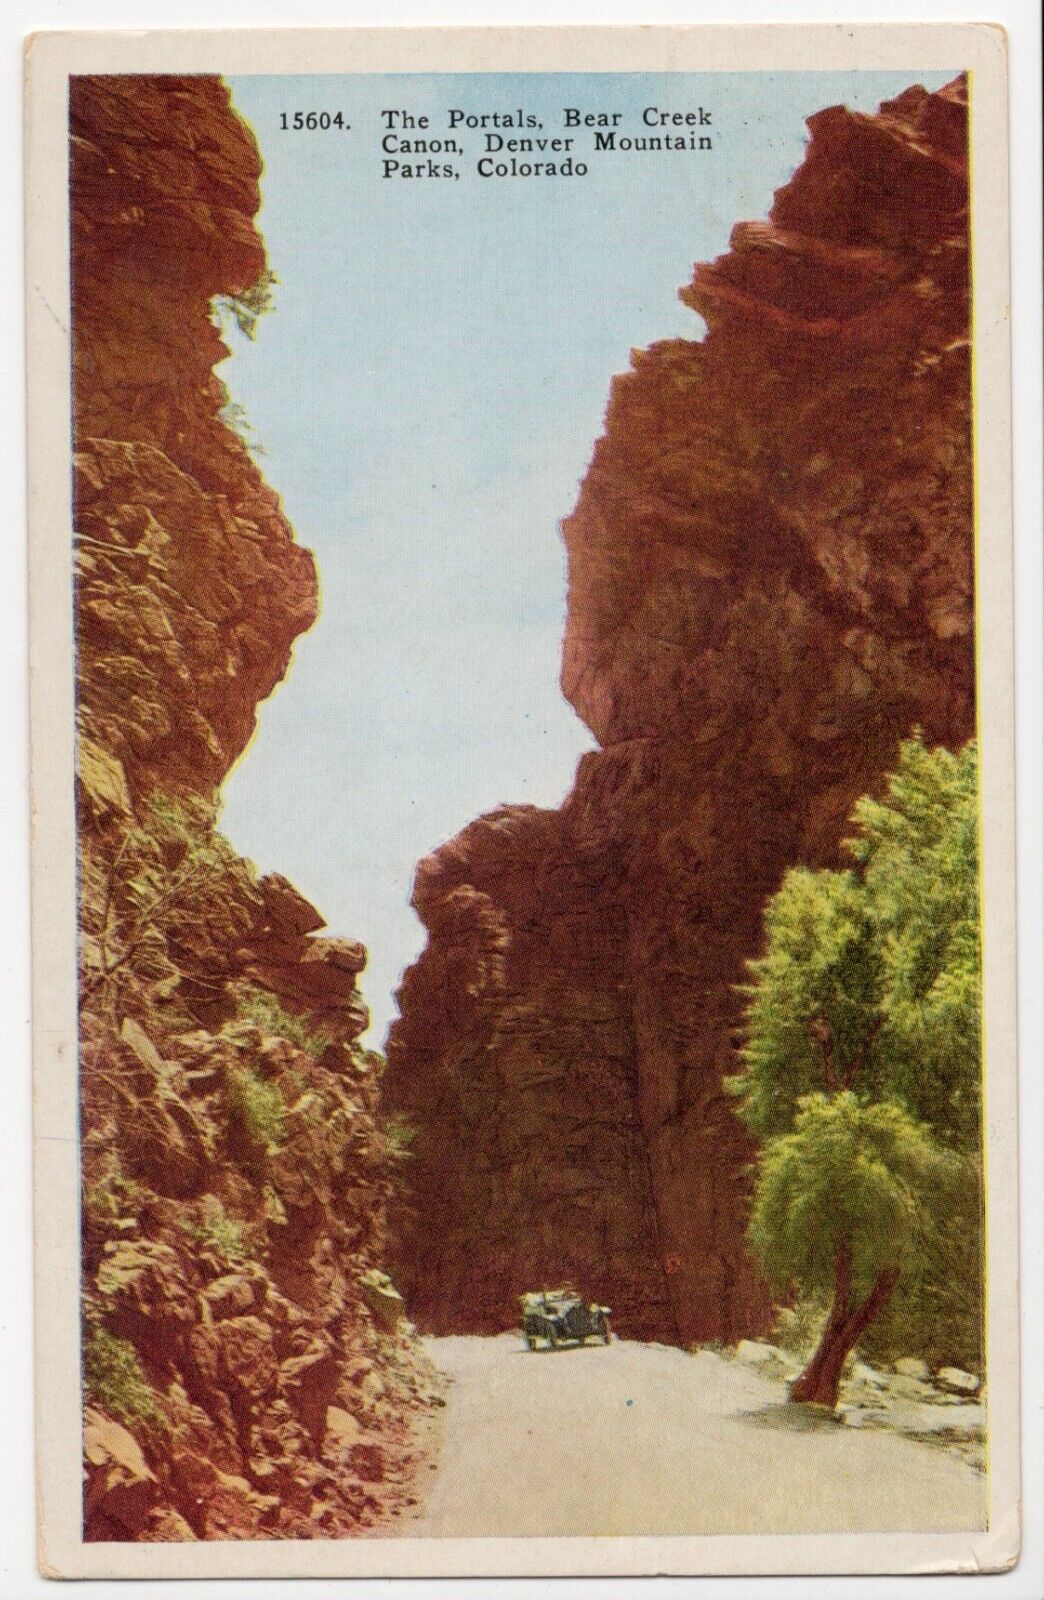 Bear Creek Canon, Denver Mountain Parks, Car Visible, Colorado, 1929 Postcard